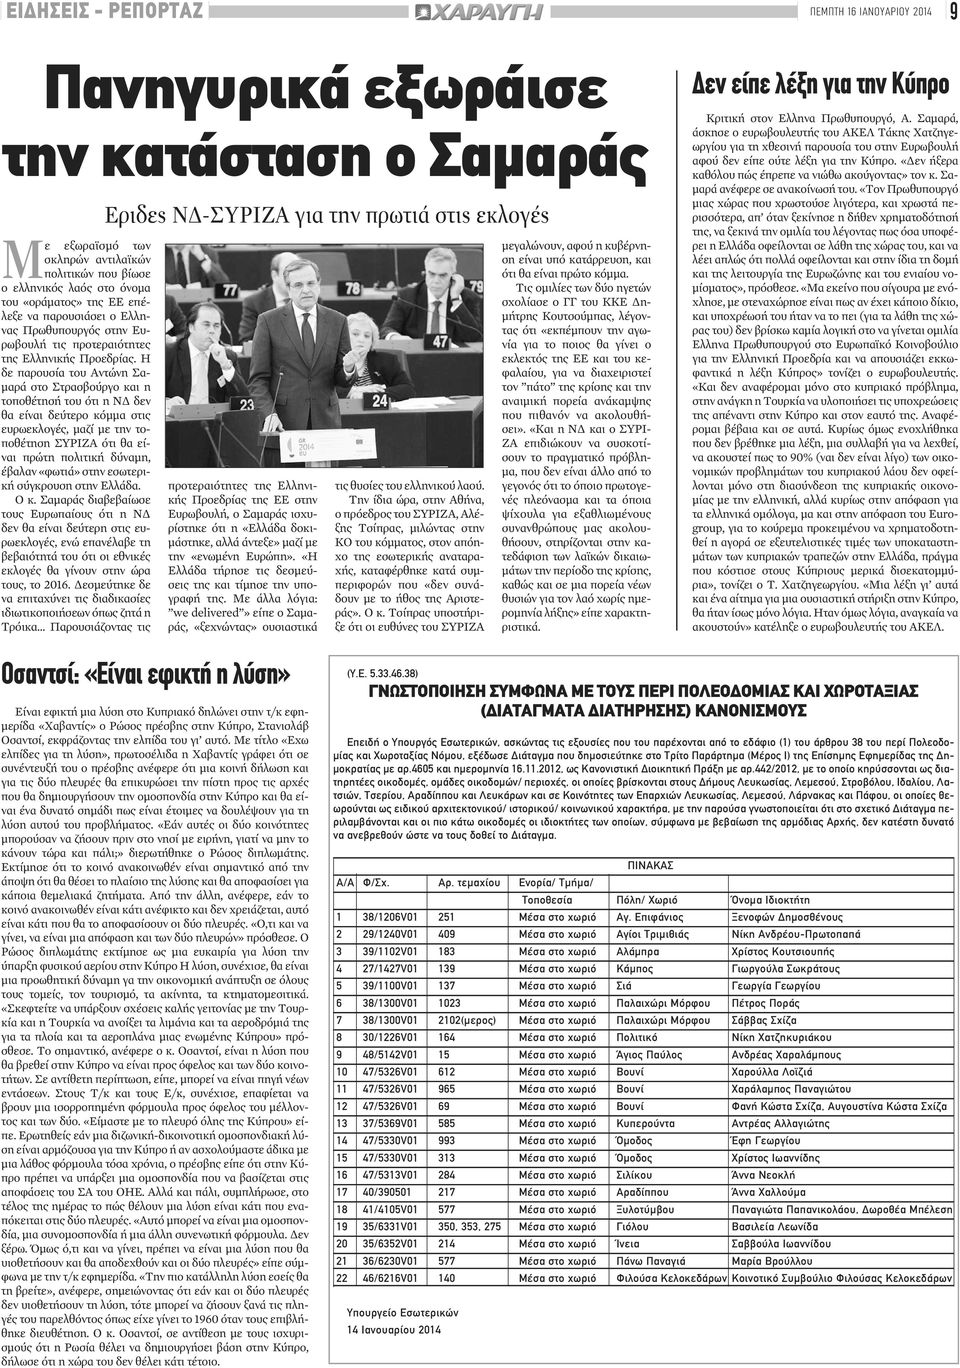 Η δε παρουσία του Αντώνη Σαμαρά στο Στρασβούργο και η τοποθέτησή του ότι η ΝΔ δεν θα είναι δεύτερο κόμμα στις ευρωεκλογές, μαζί με την τοποθέτηση ΣΥΡΙΖΑ ότι θα είναι πρώτη πολιτική δύναμη, έβαλαν